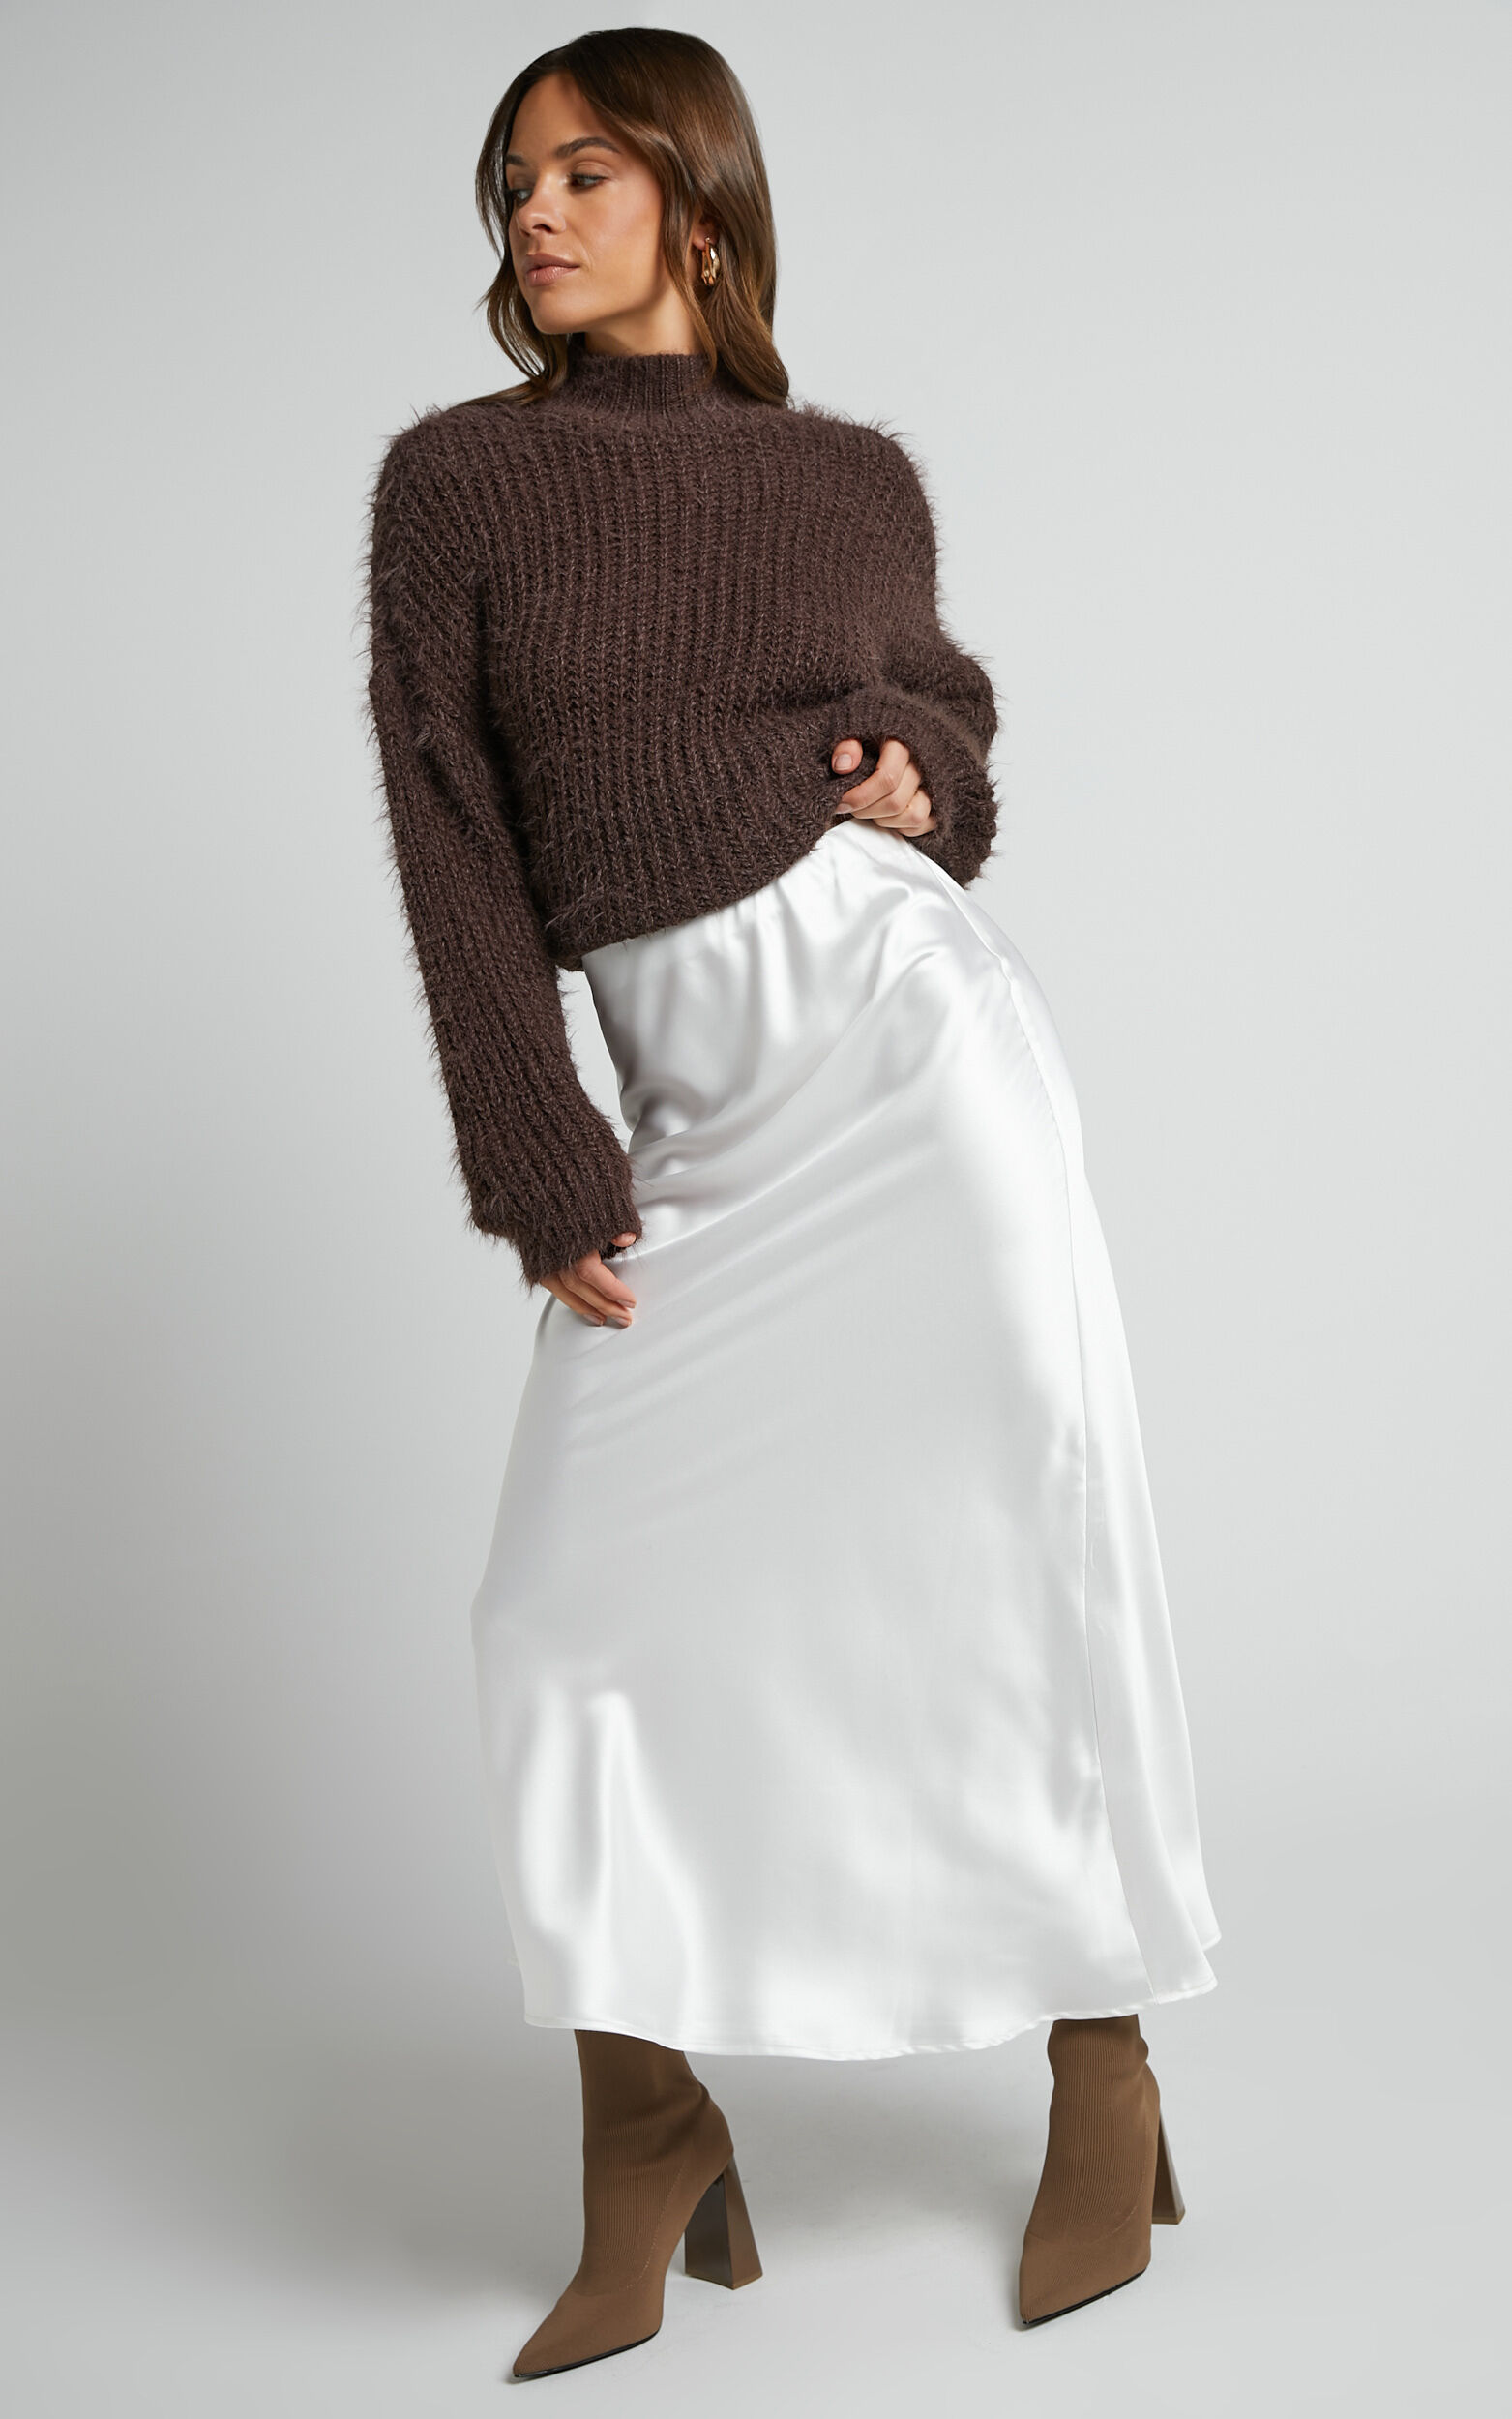 Discover 70+ white slip skirt best